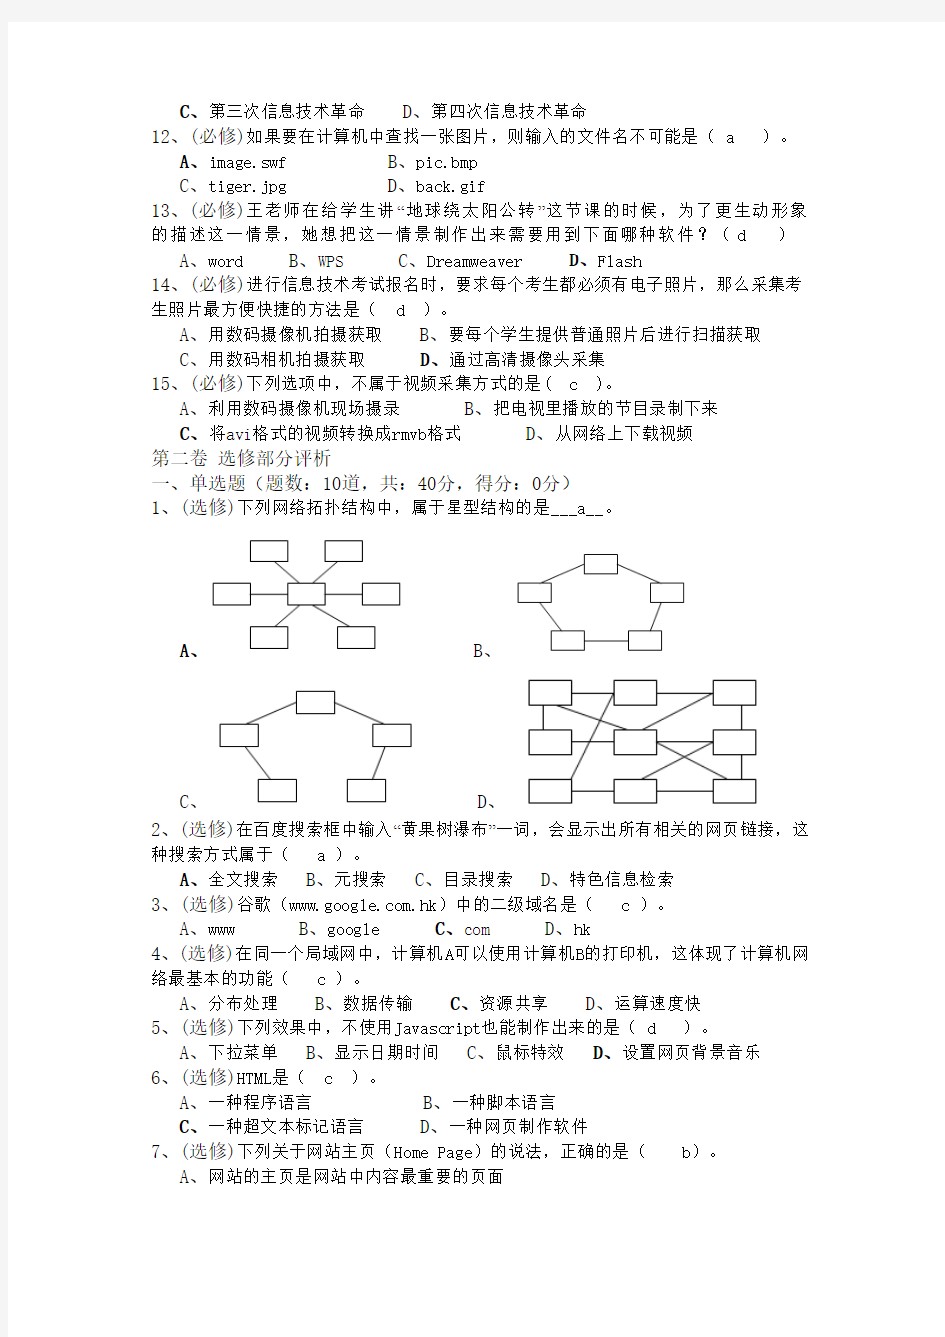 贵州省2012年高中学业水平考试整理版笔试题 (1)